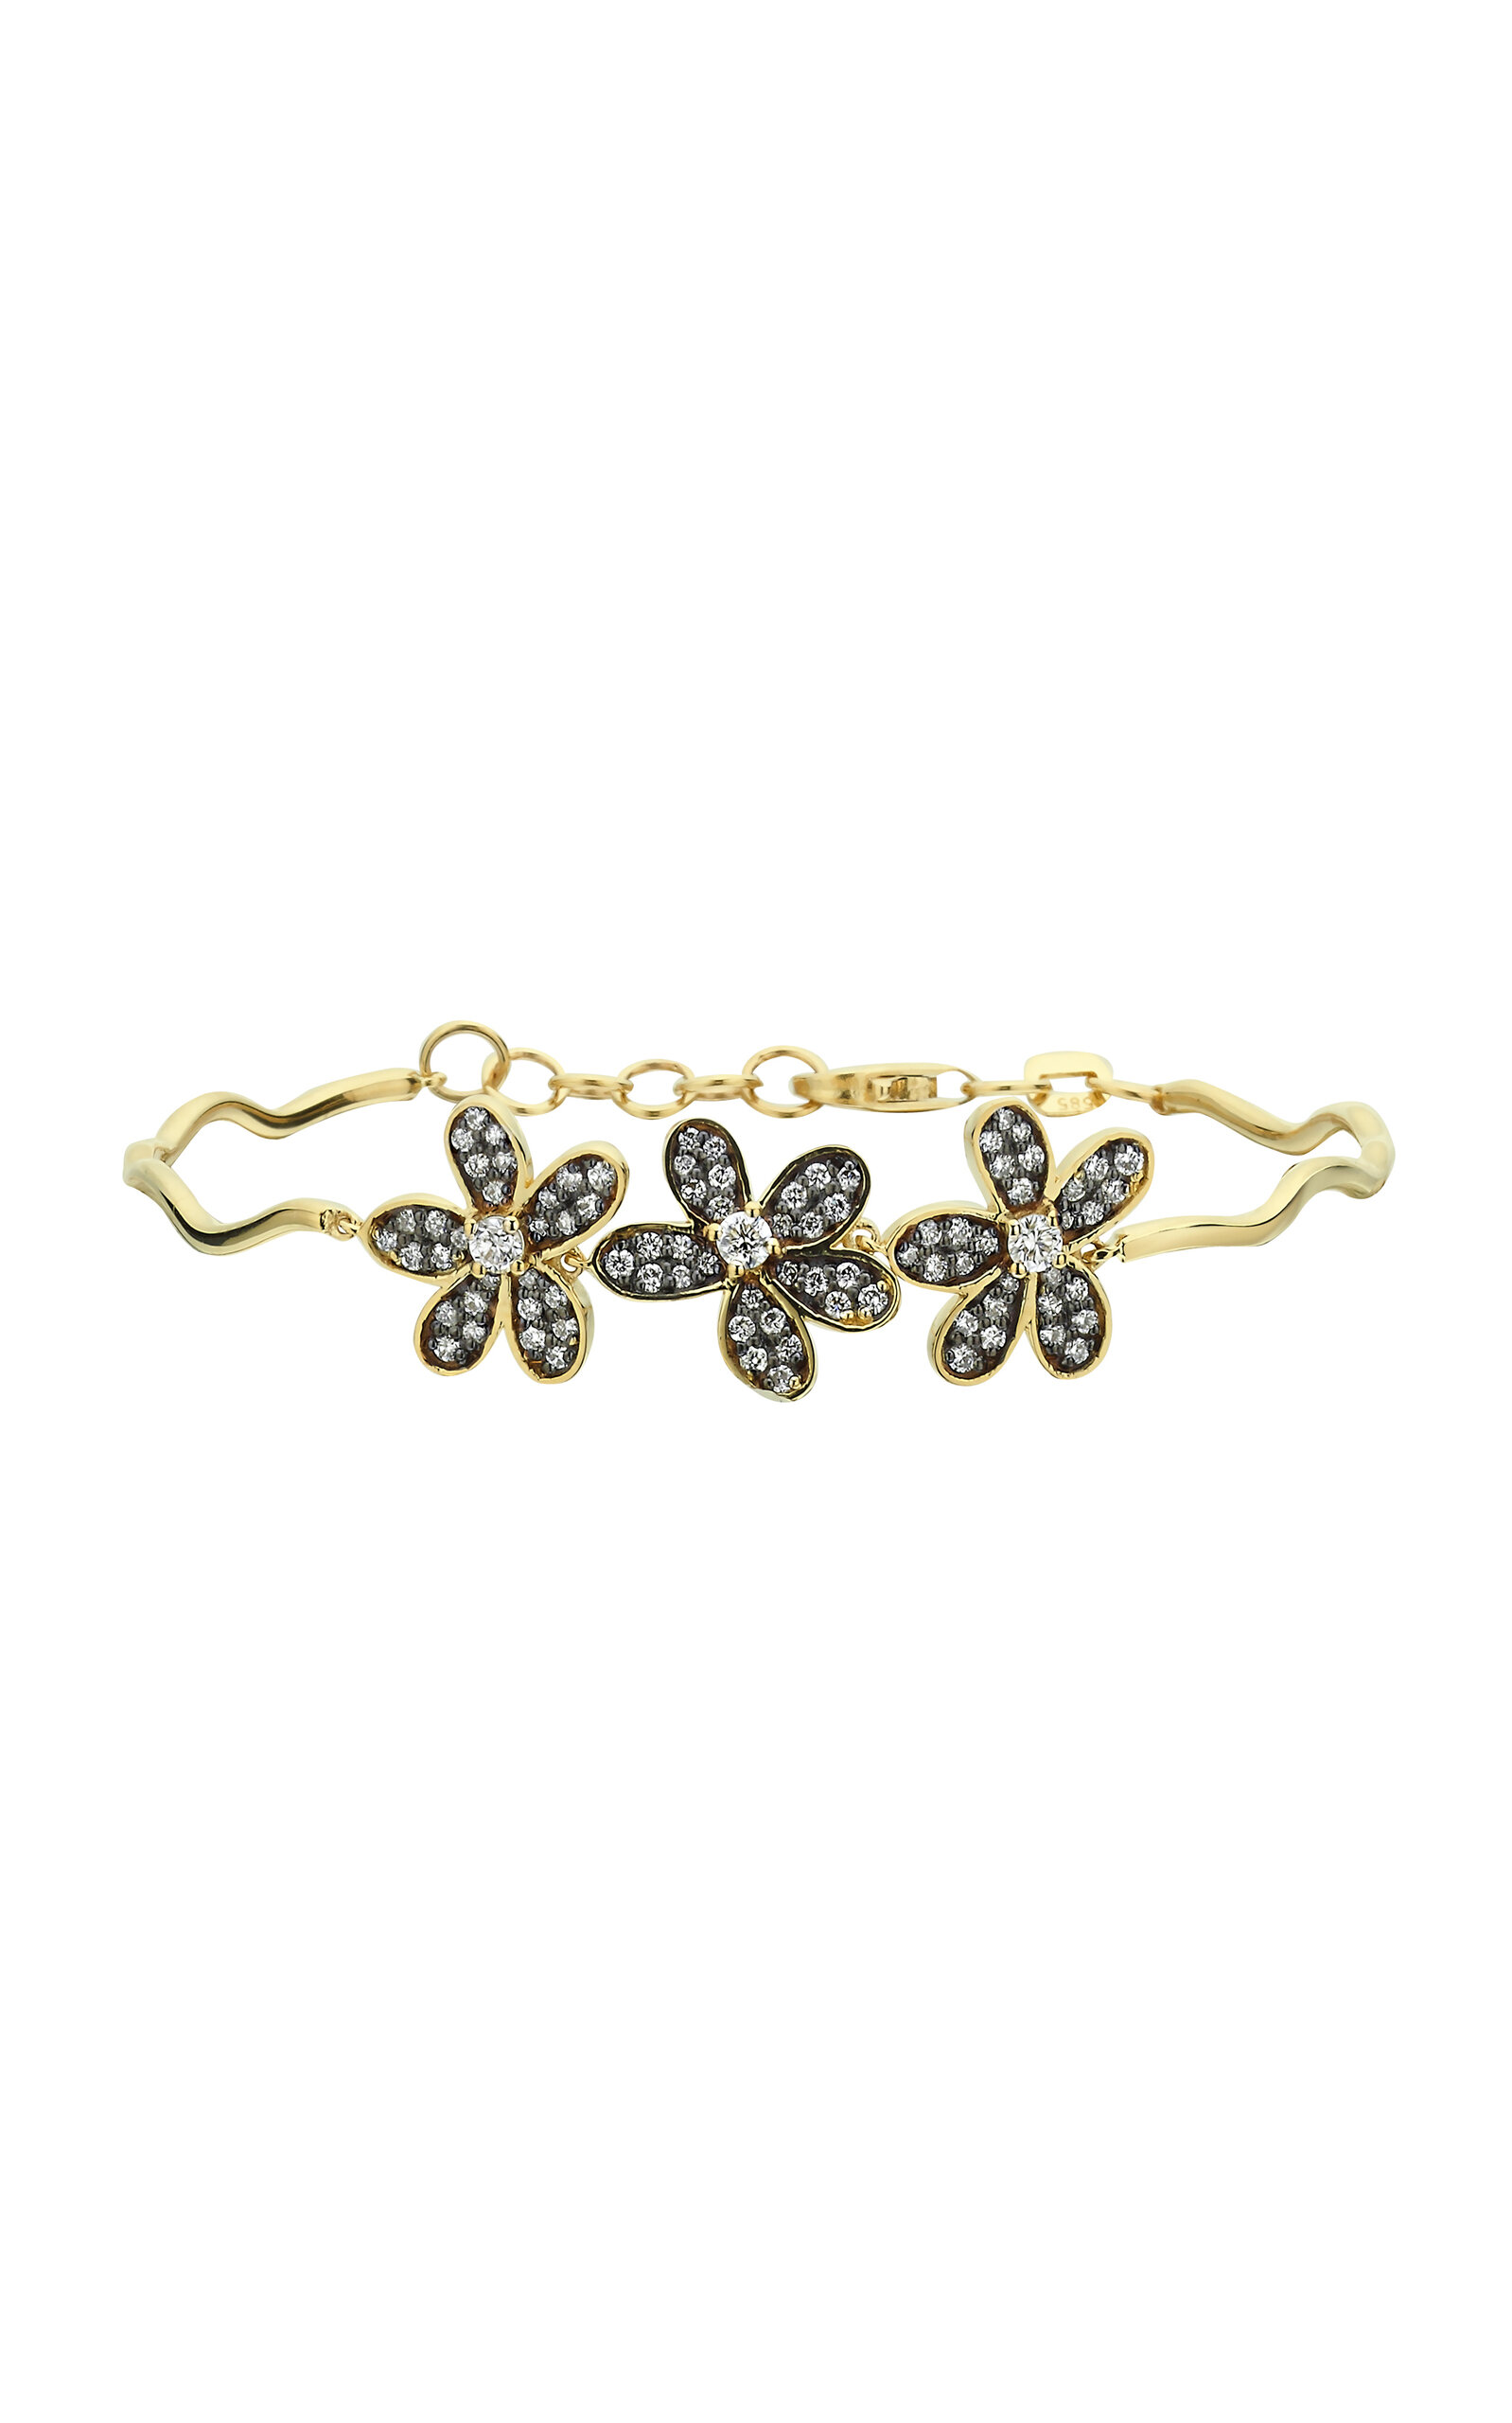 Charms Company Women's Rebellion 14K Yellow Gold Diamond Bracelet